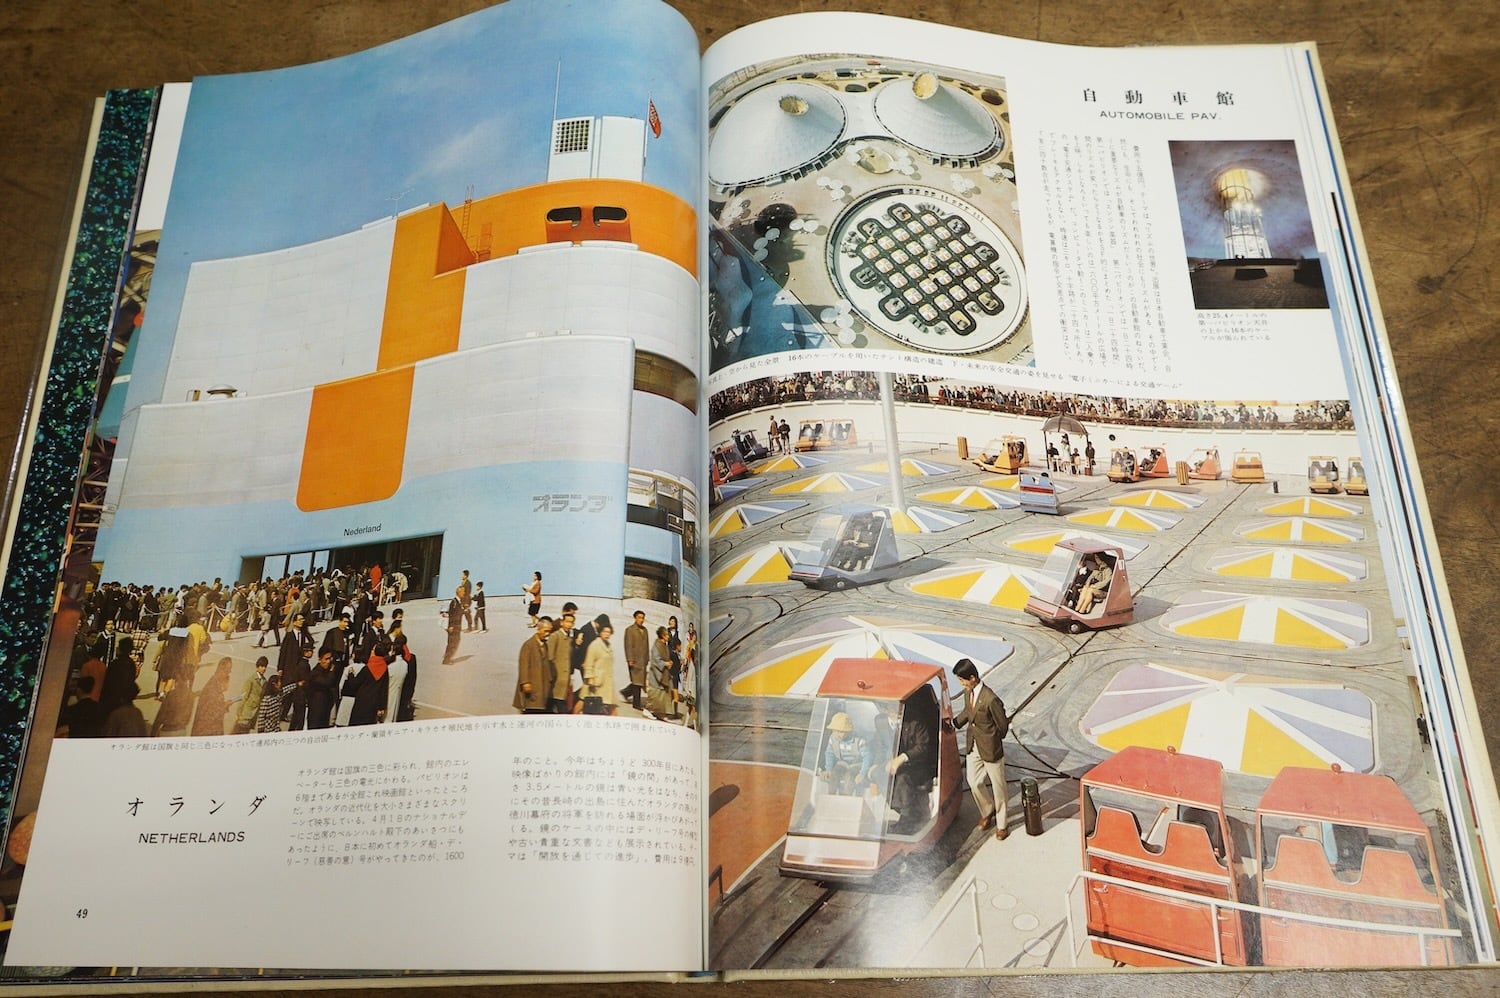 EXPO'70 日本万国博覧会会報 Vol.5/1967  貴重資料